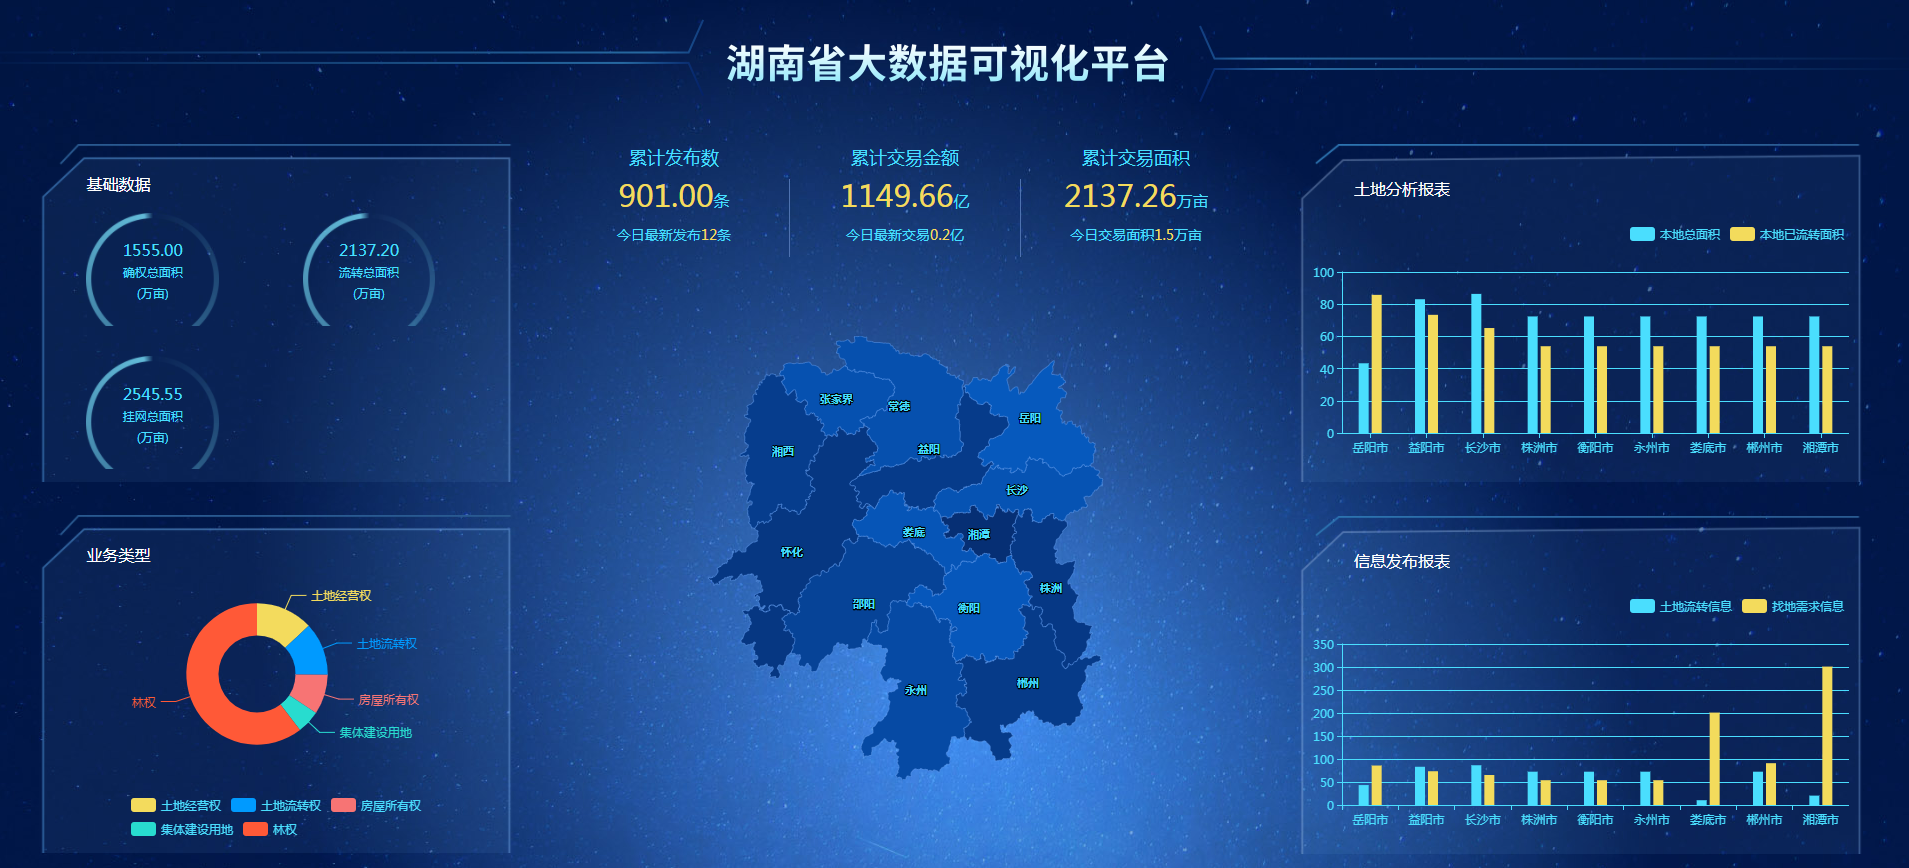 湖南省土地交易大数据监控可视化大屏展示平台